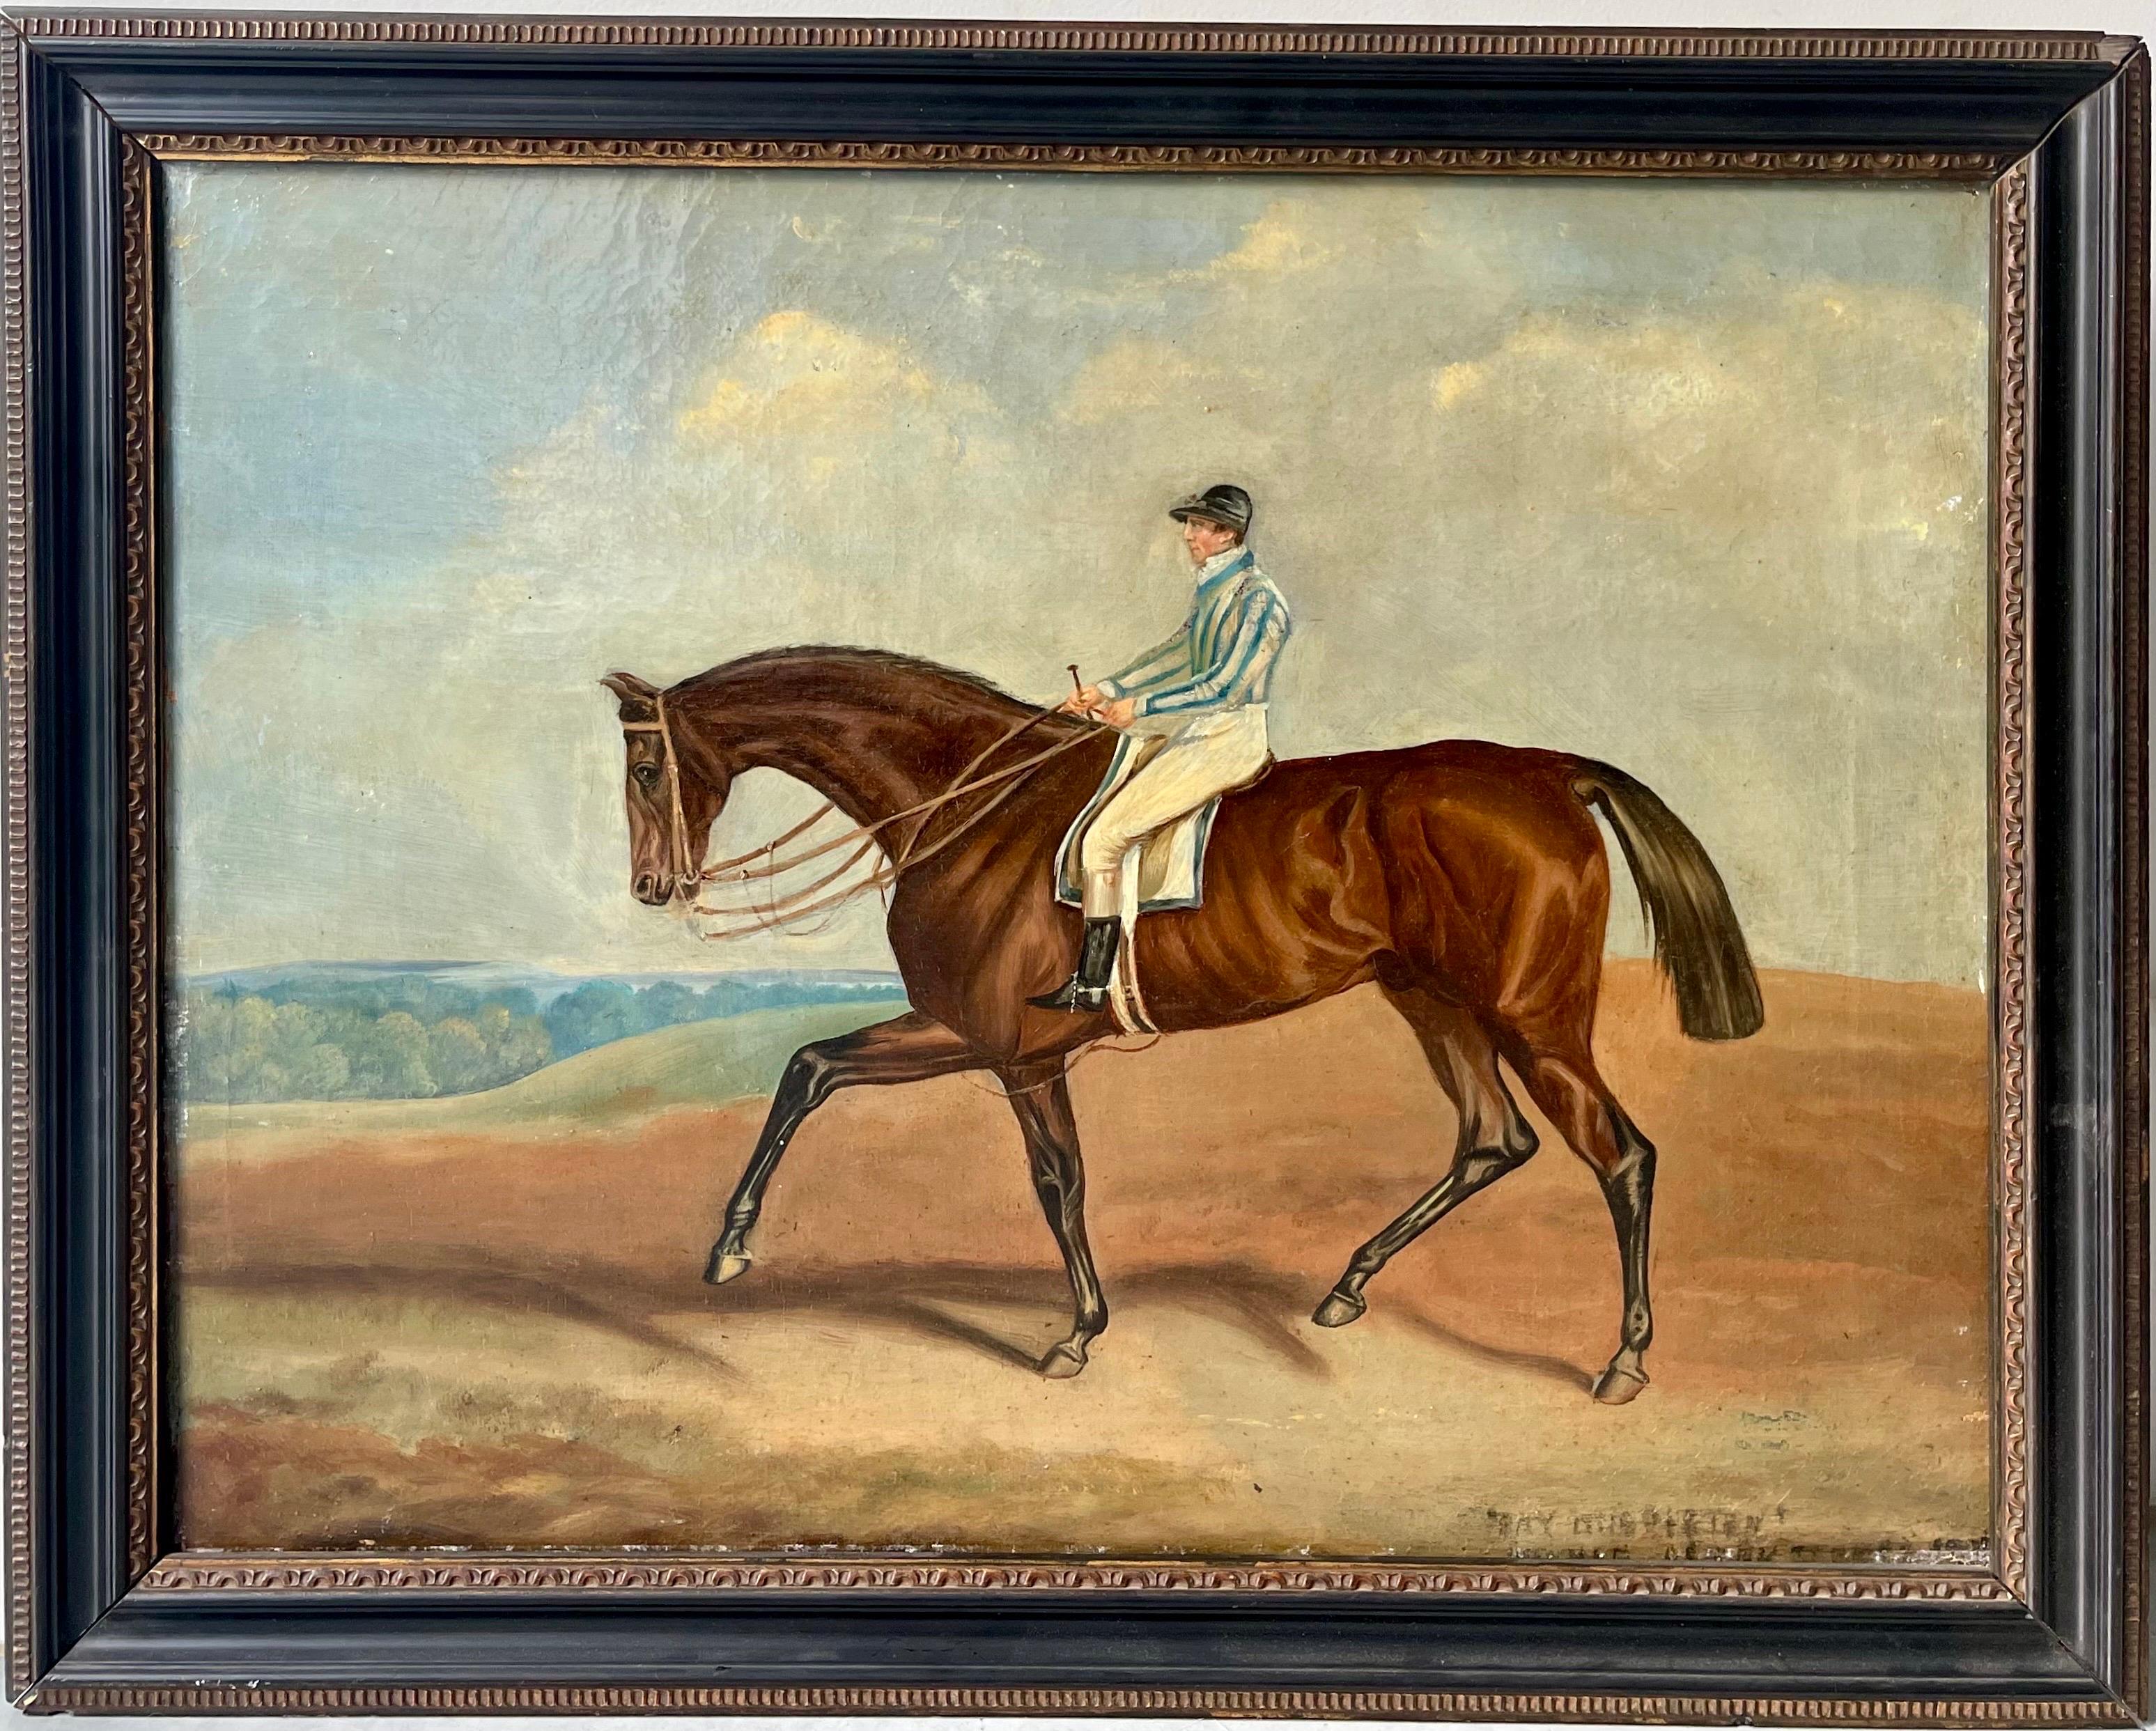 John Frederick Herring Sr. Animal Painting - 19th century oil painting of a horse - Bay Middleton winner of the Epsom Derby